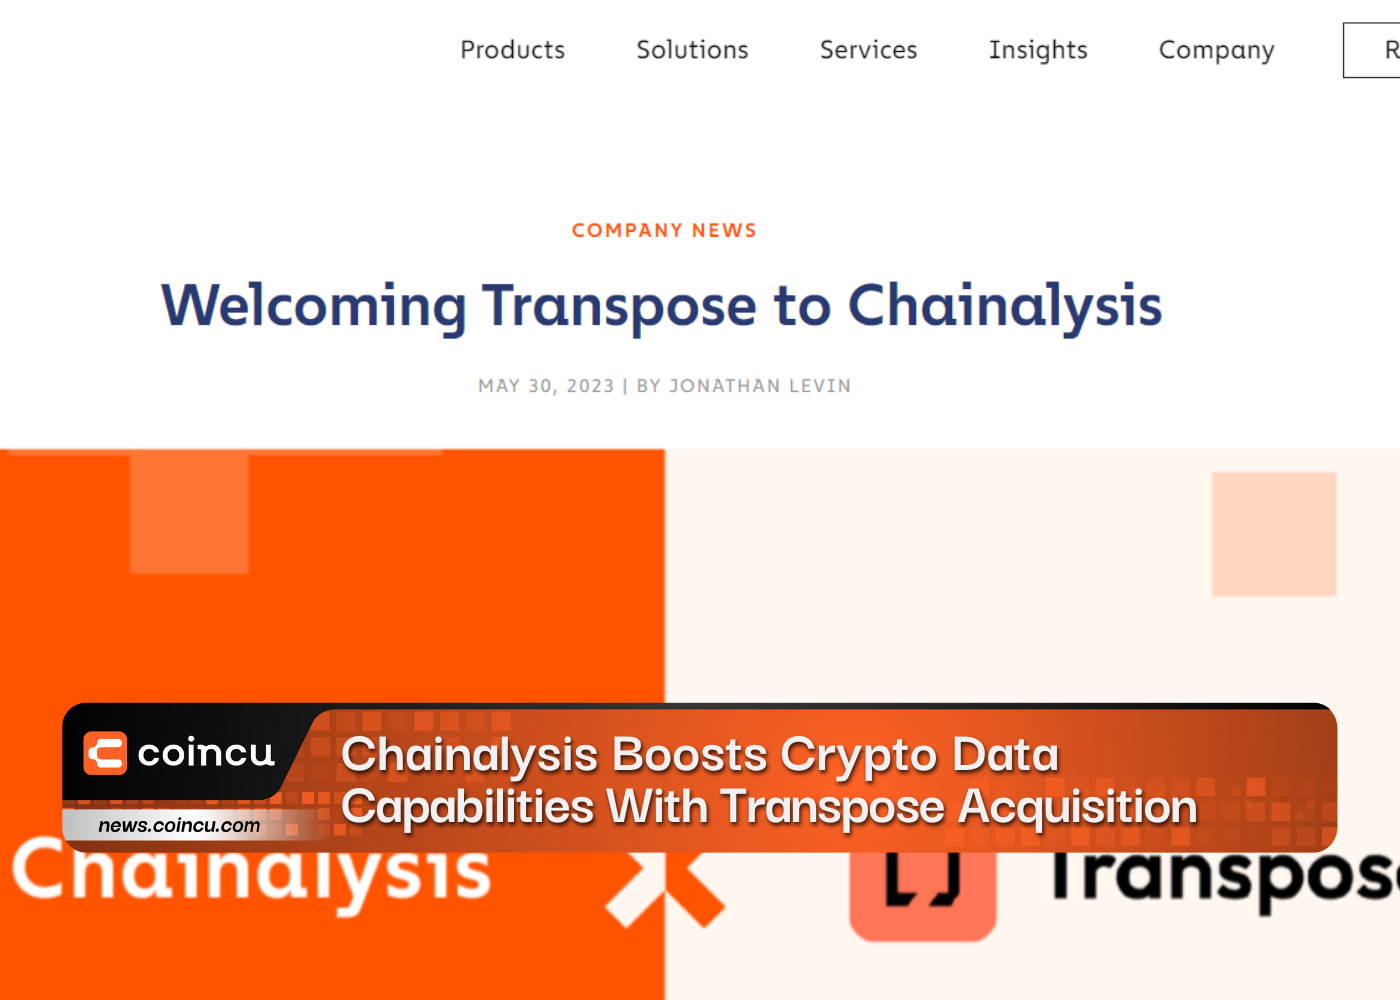 Chainalysis Boosts Crypto Data